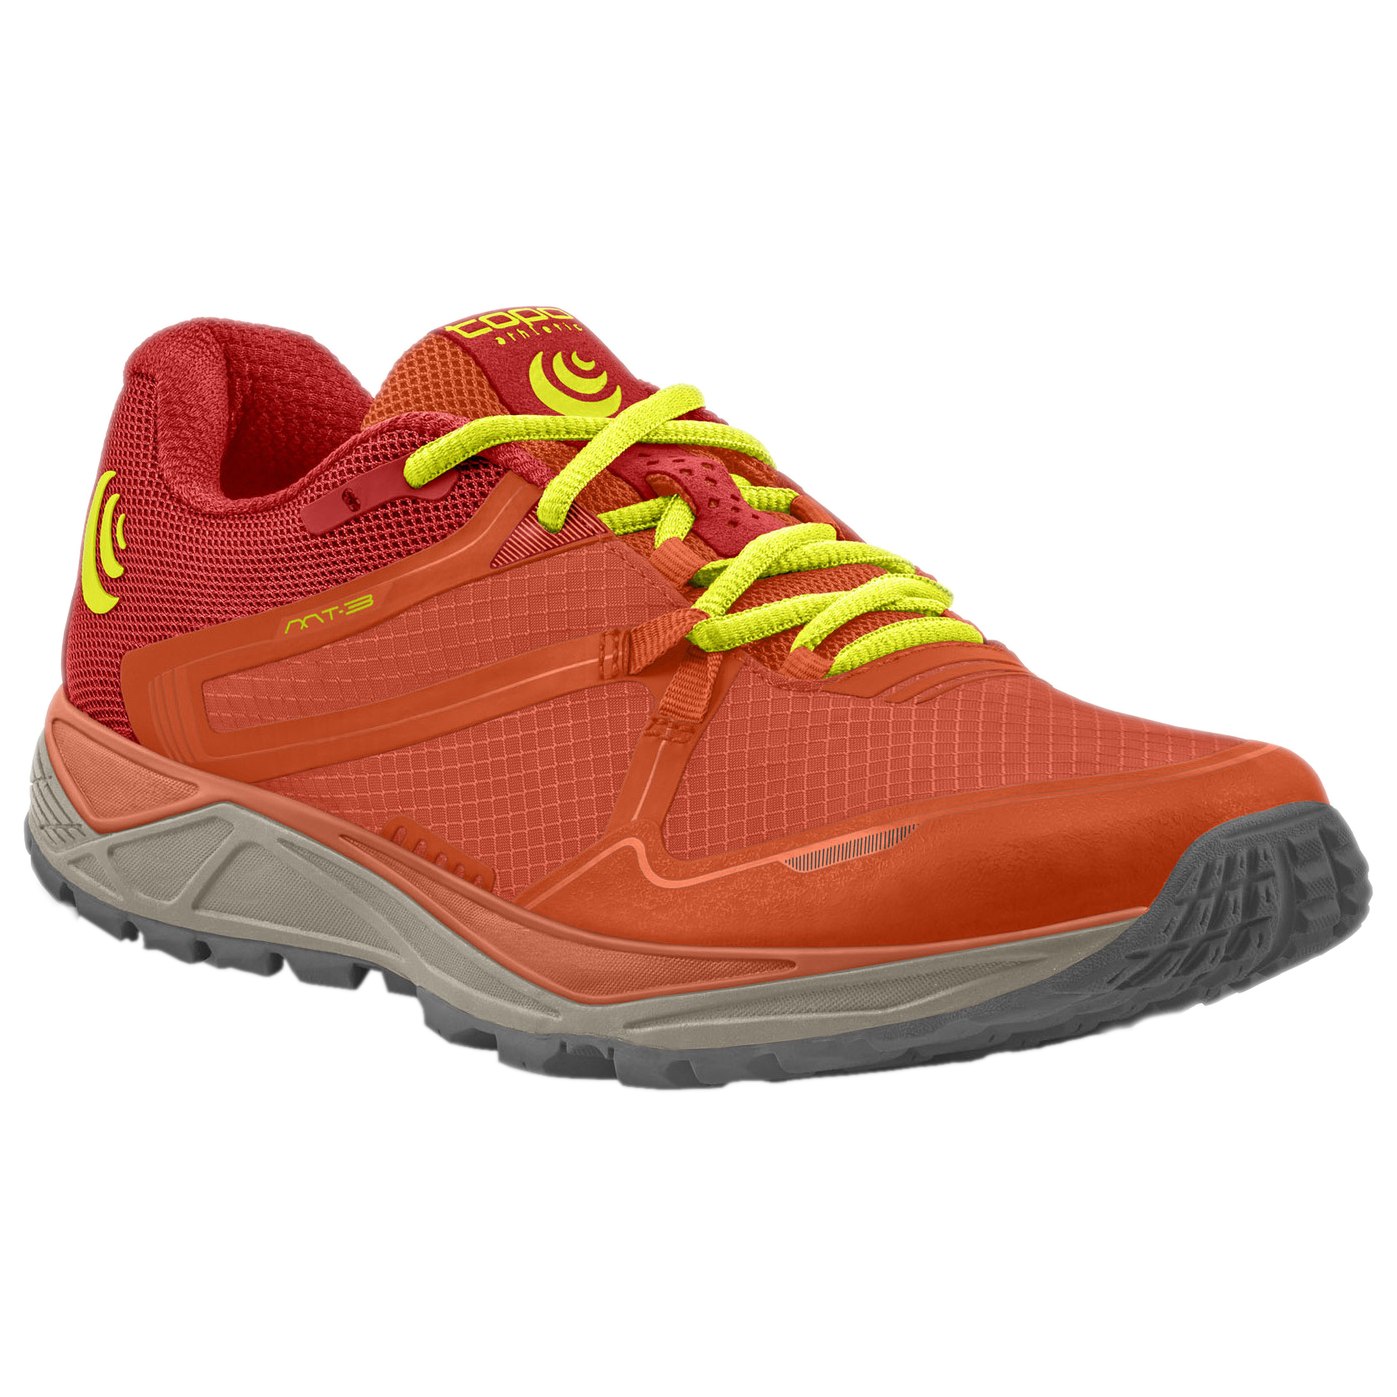 Produktbild von Topo Athletic MT-3 Damen Trail Laufschuhe - orange/gelb